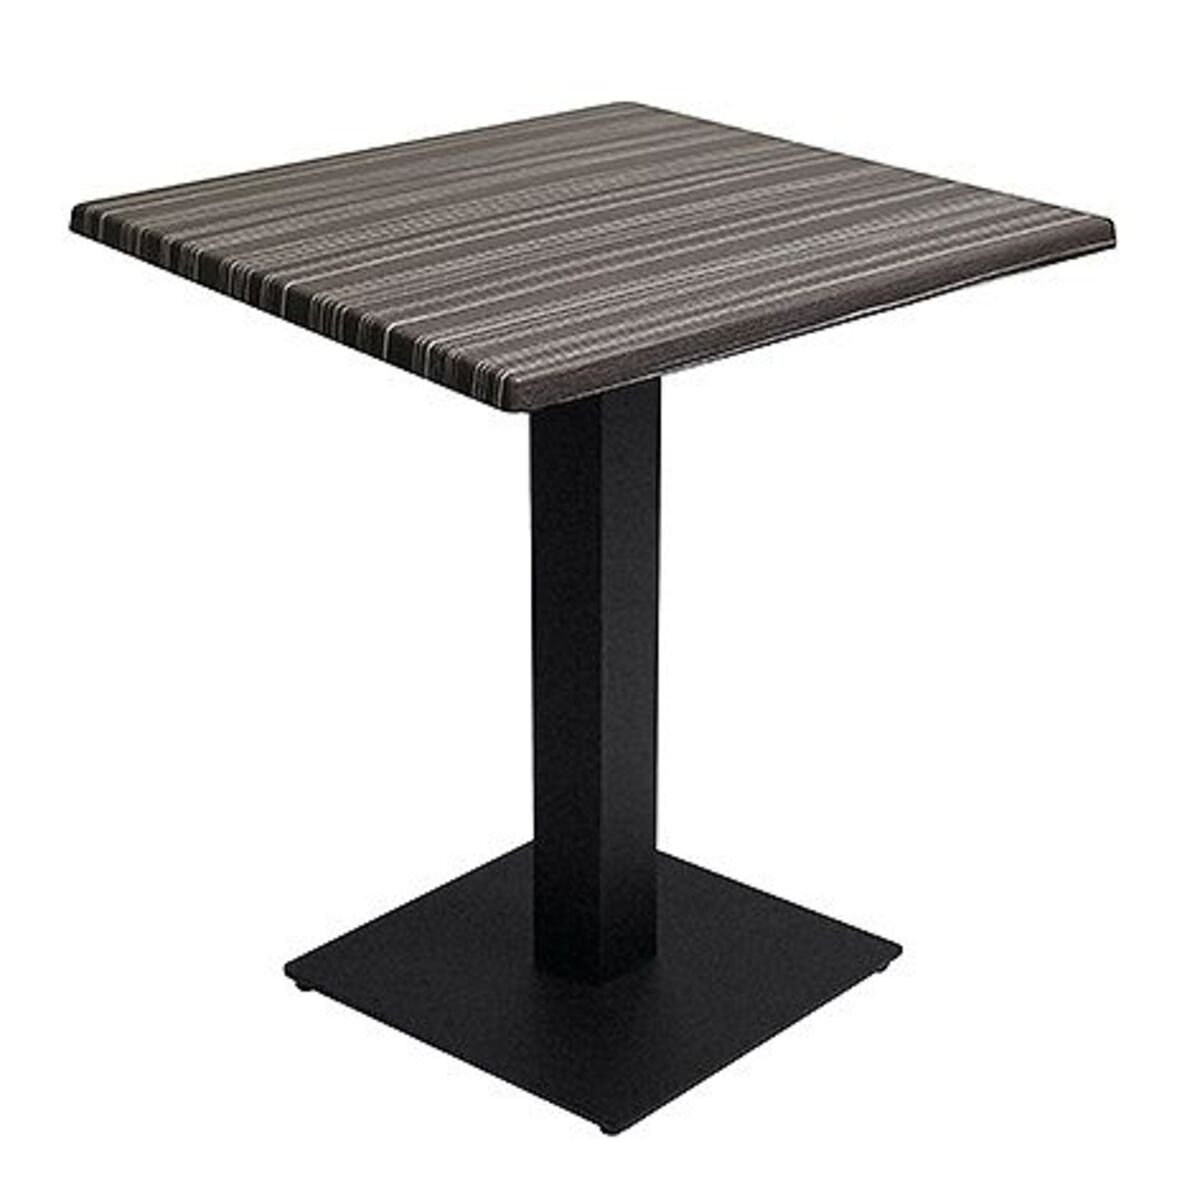 Table intérieure pied noir base carrée & plateau werzalit noir 70x70 cm